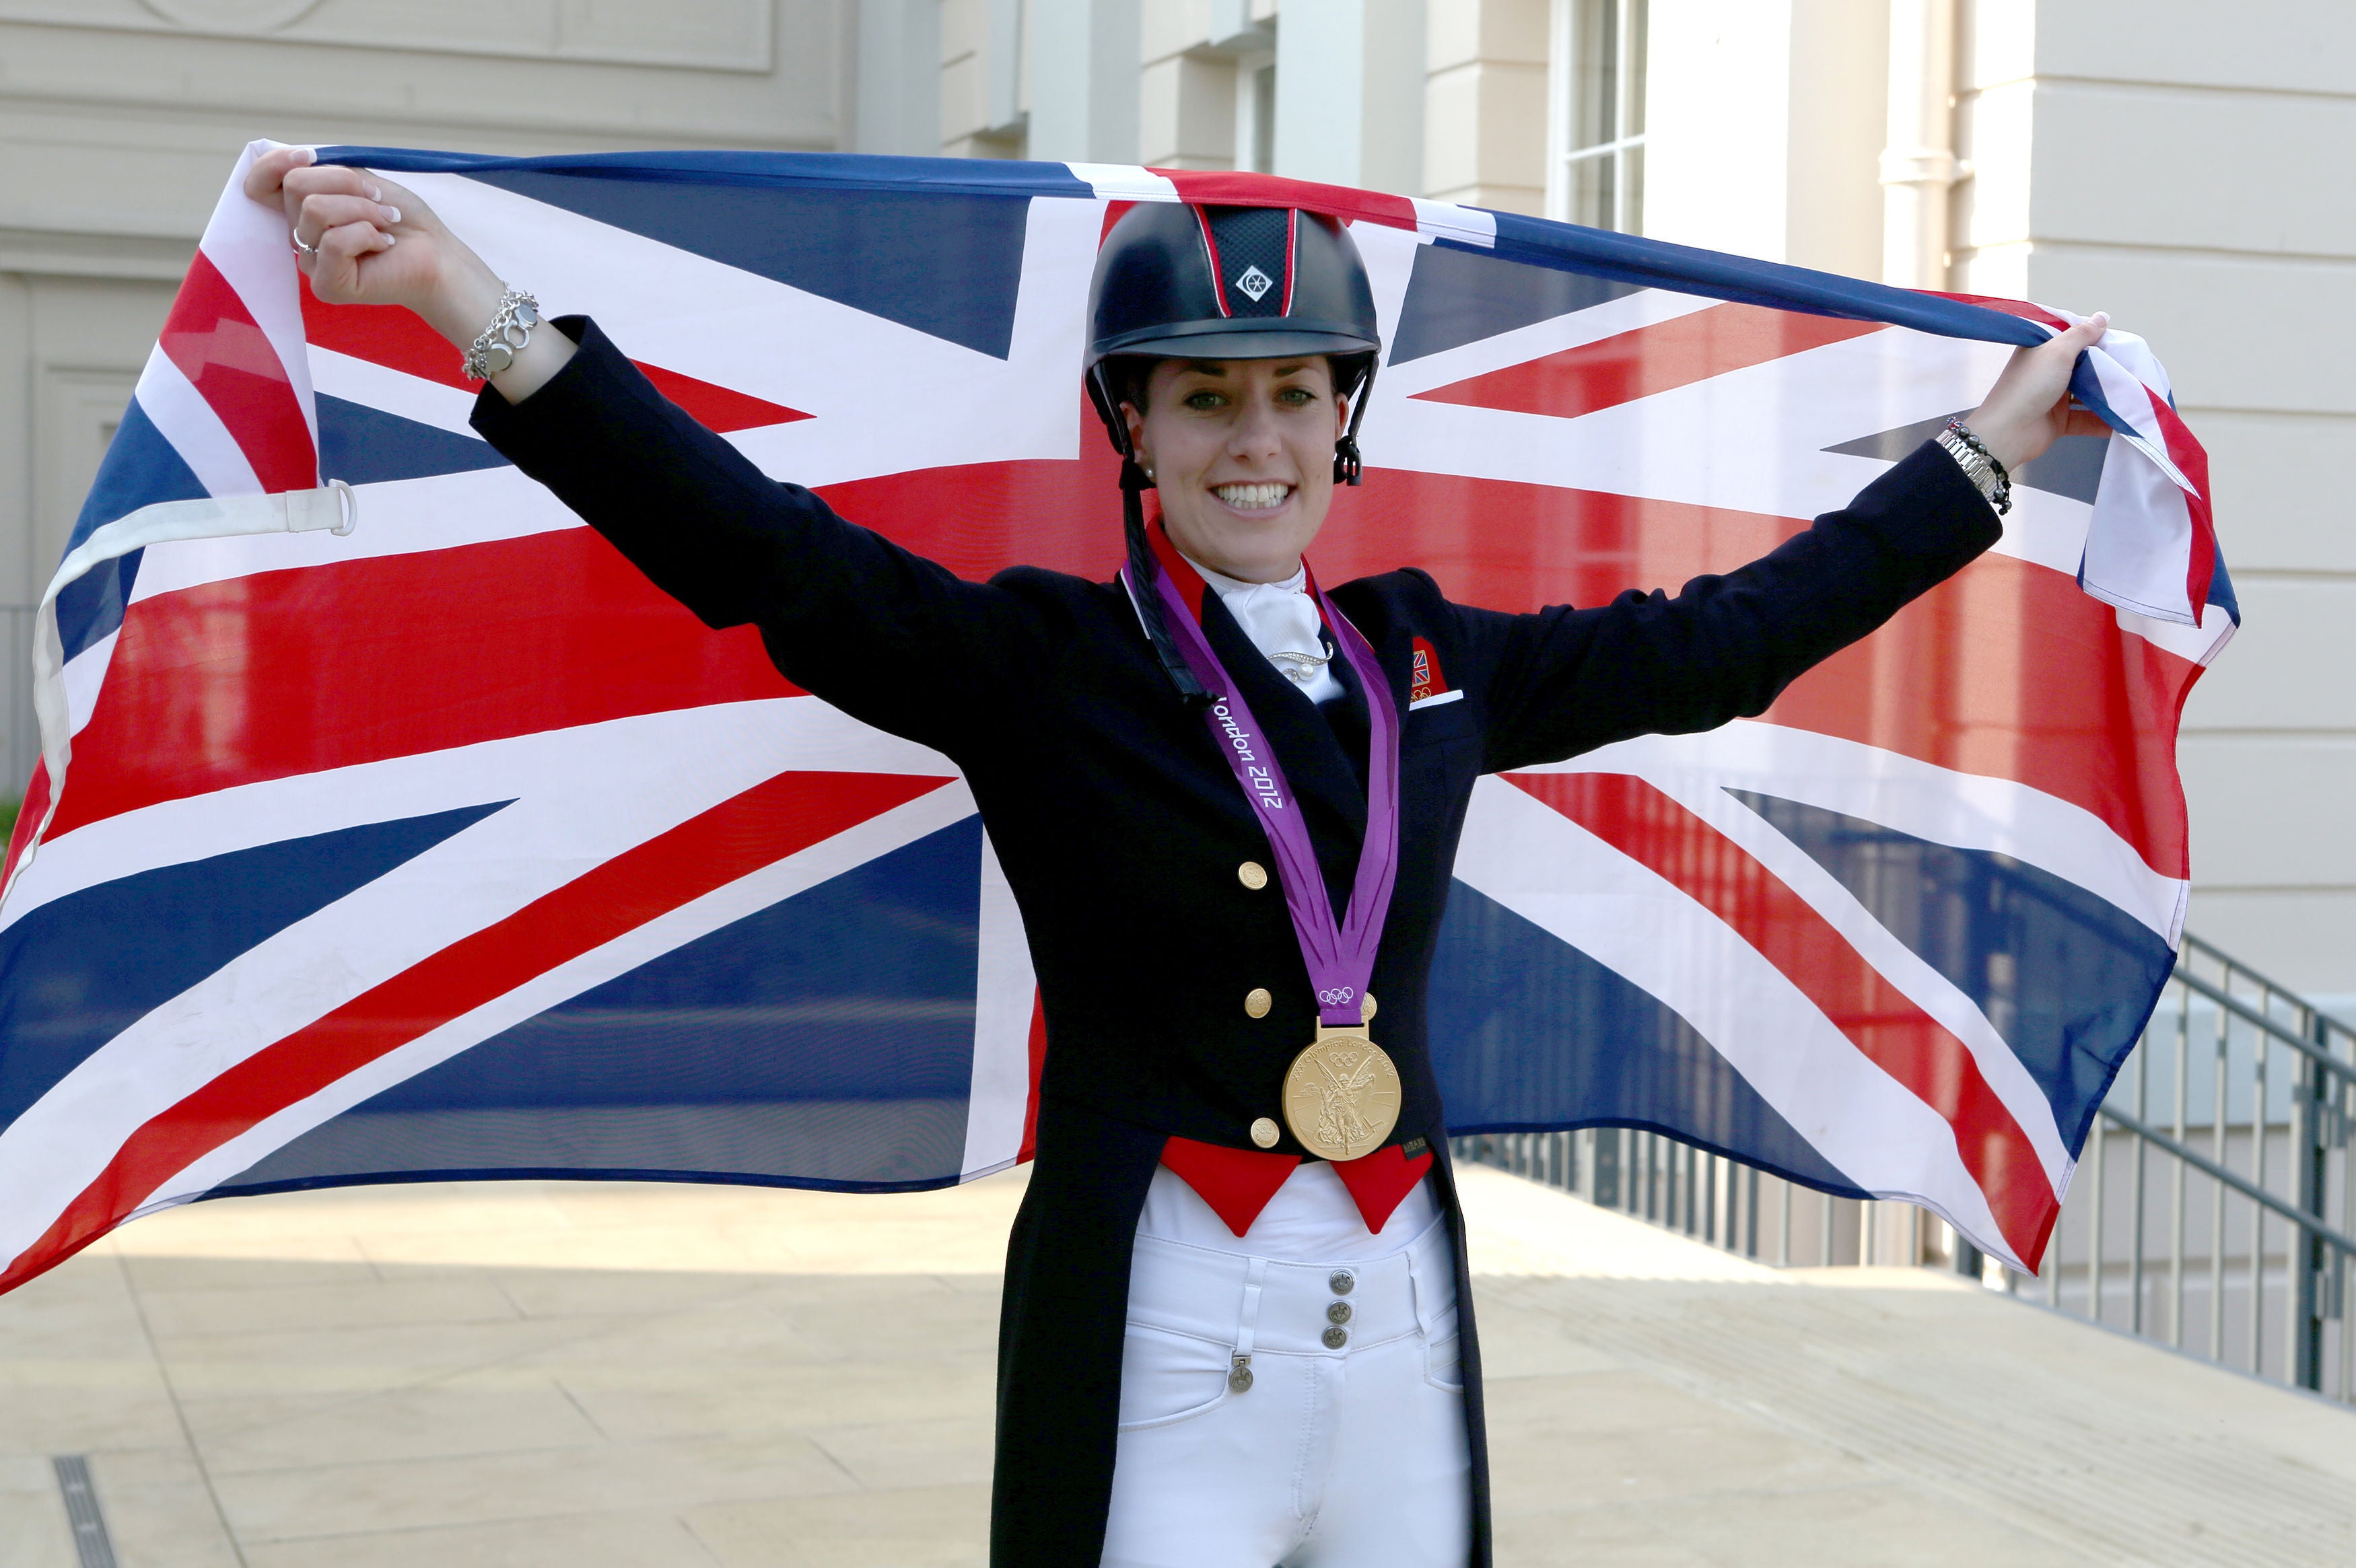 Charlotte Dujardin celebrating after winning gold at London 2012 games